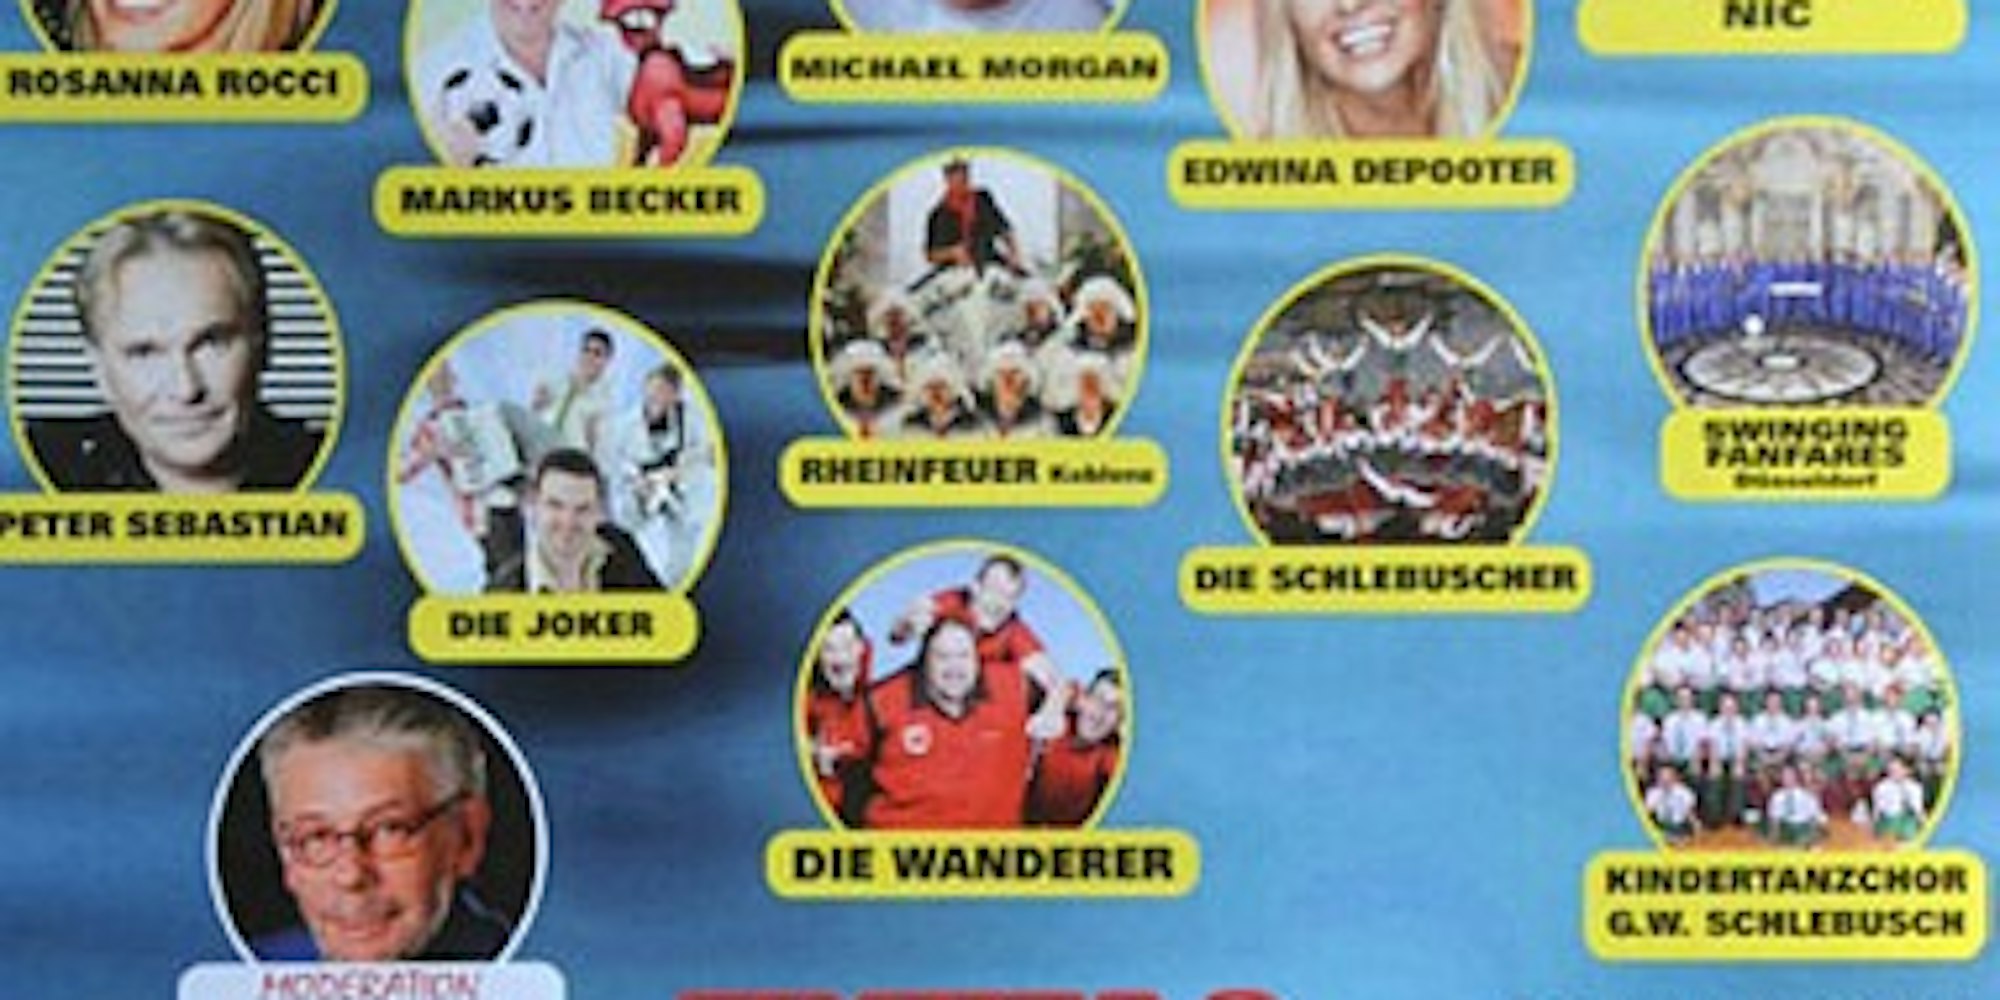 Viele Stars unterstützen den Leverkusener Verein "Hilfe tut Not".